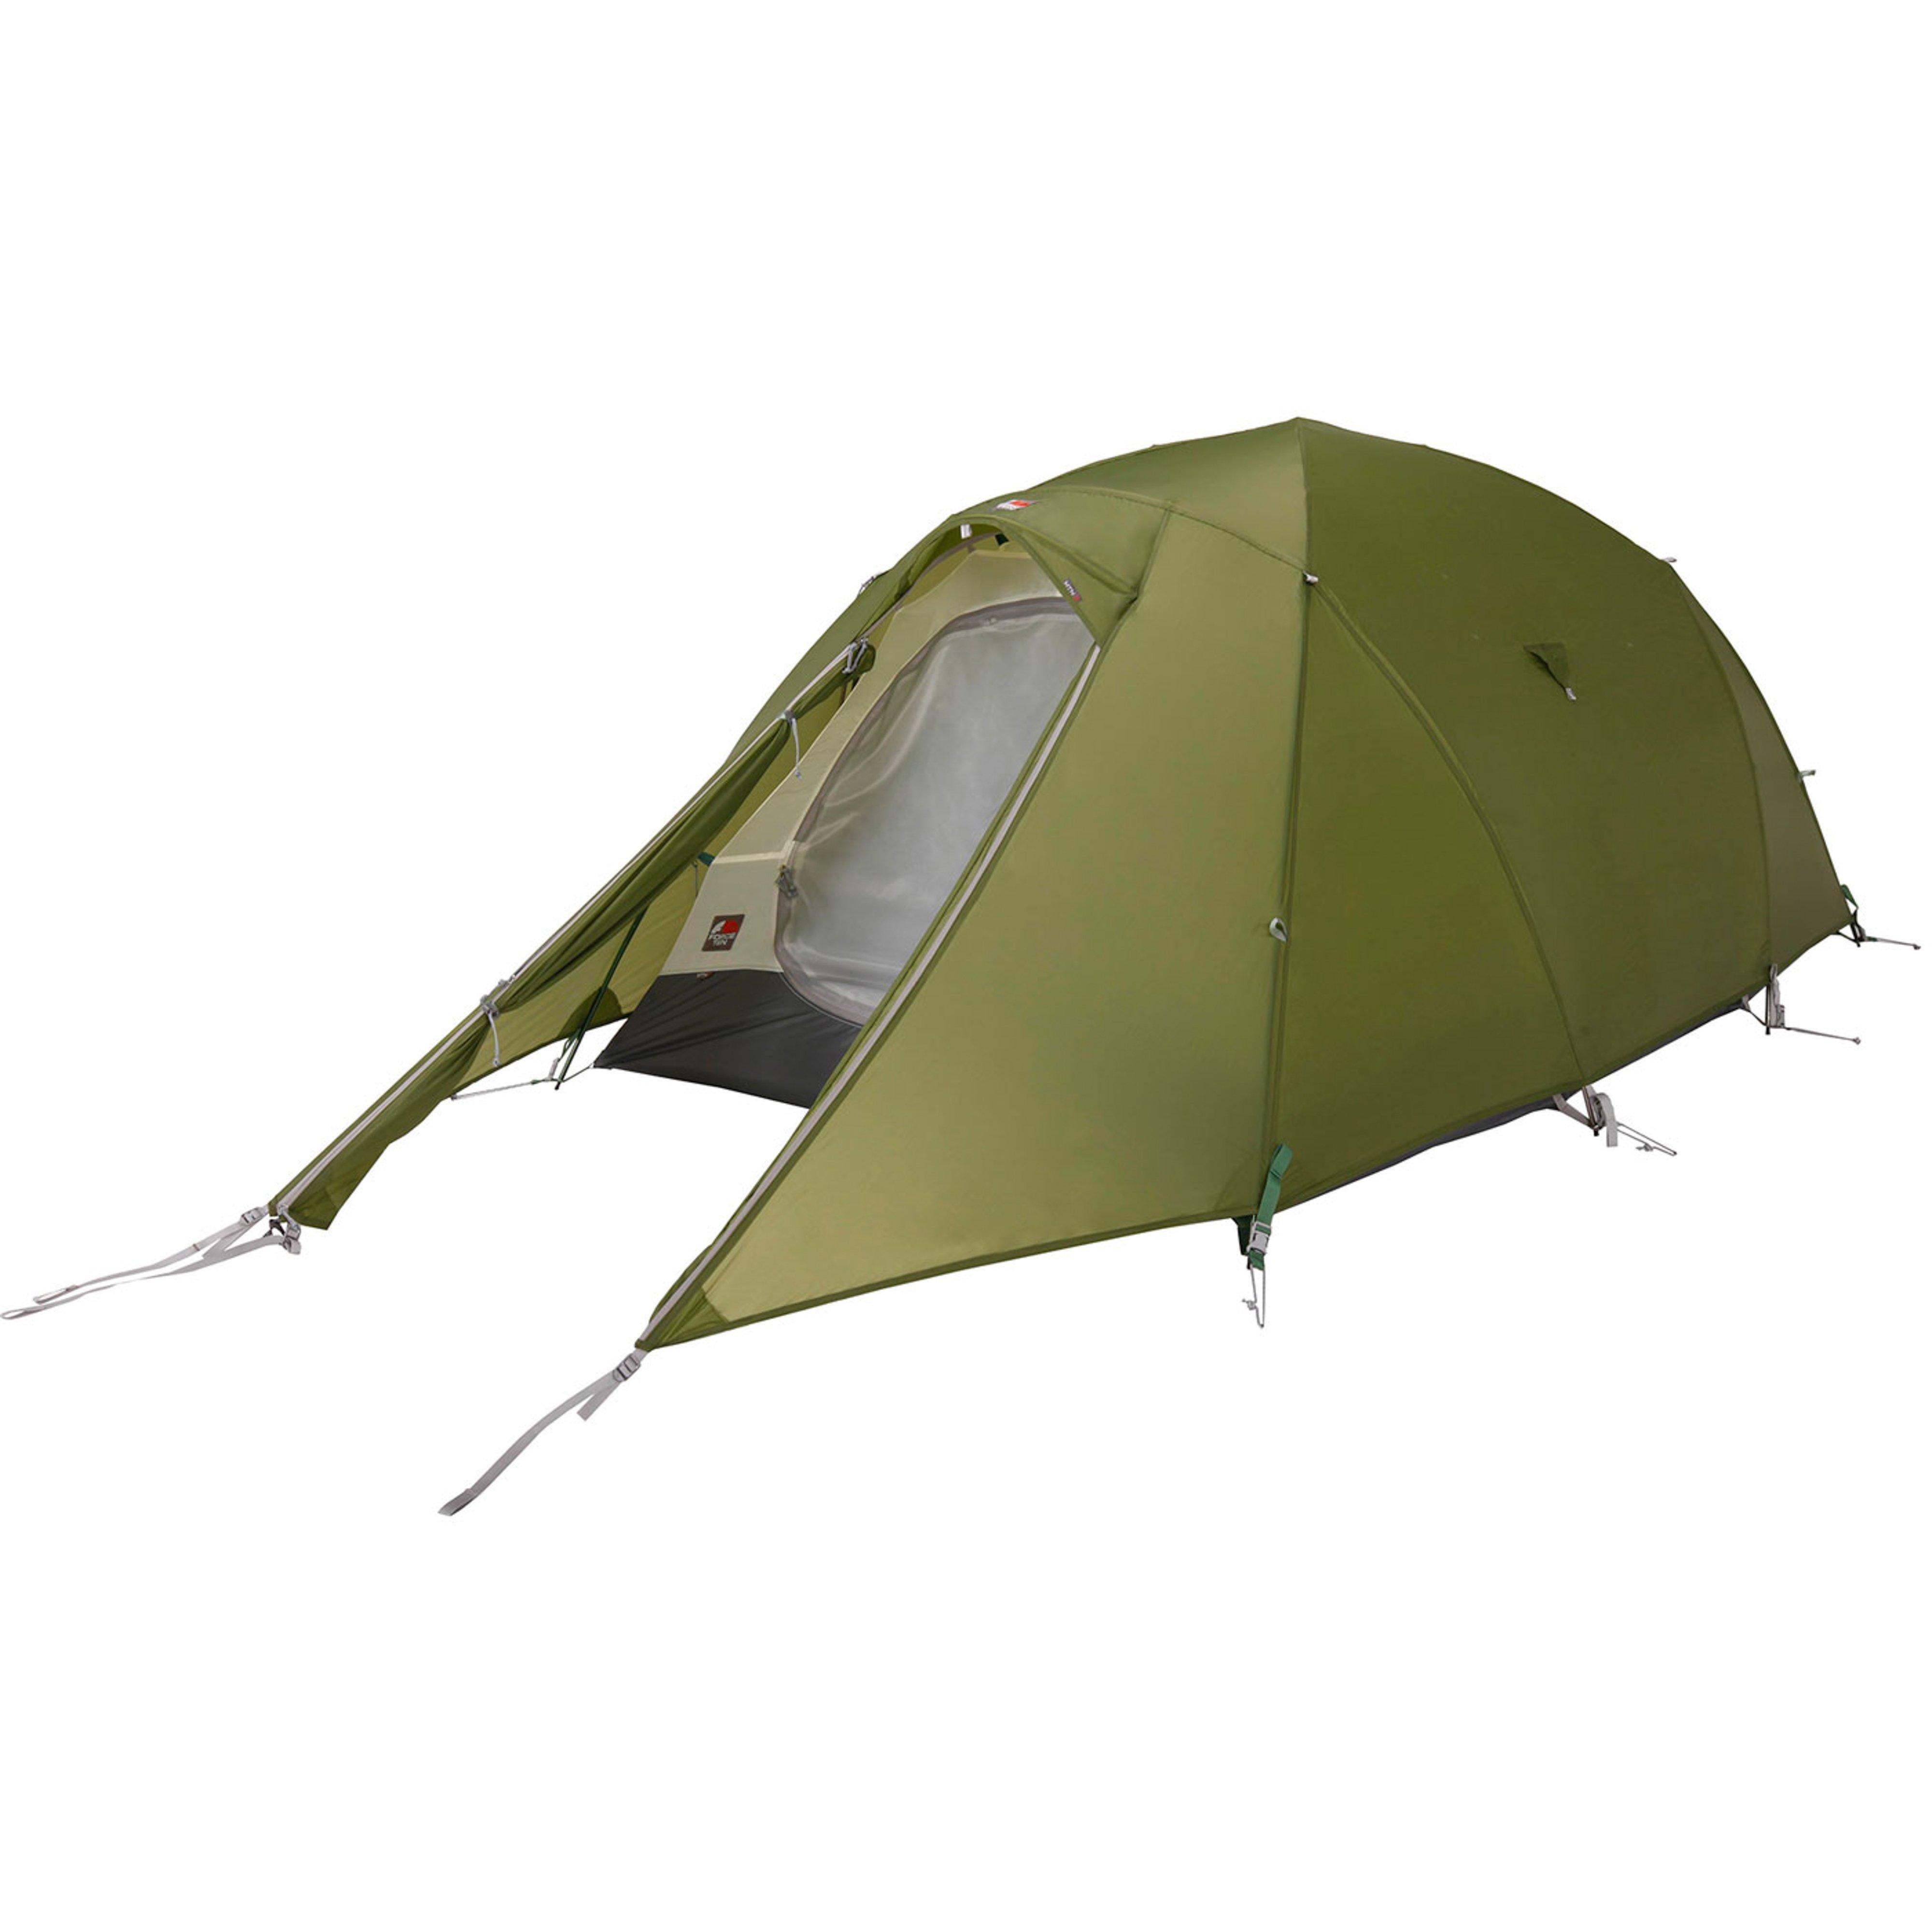 Vango F10 MTN 2 Tent Review